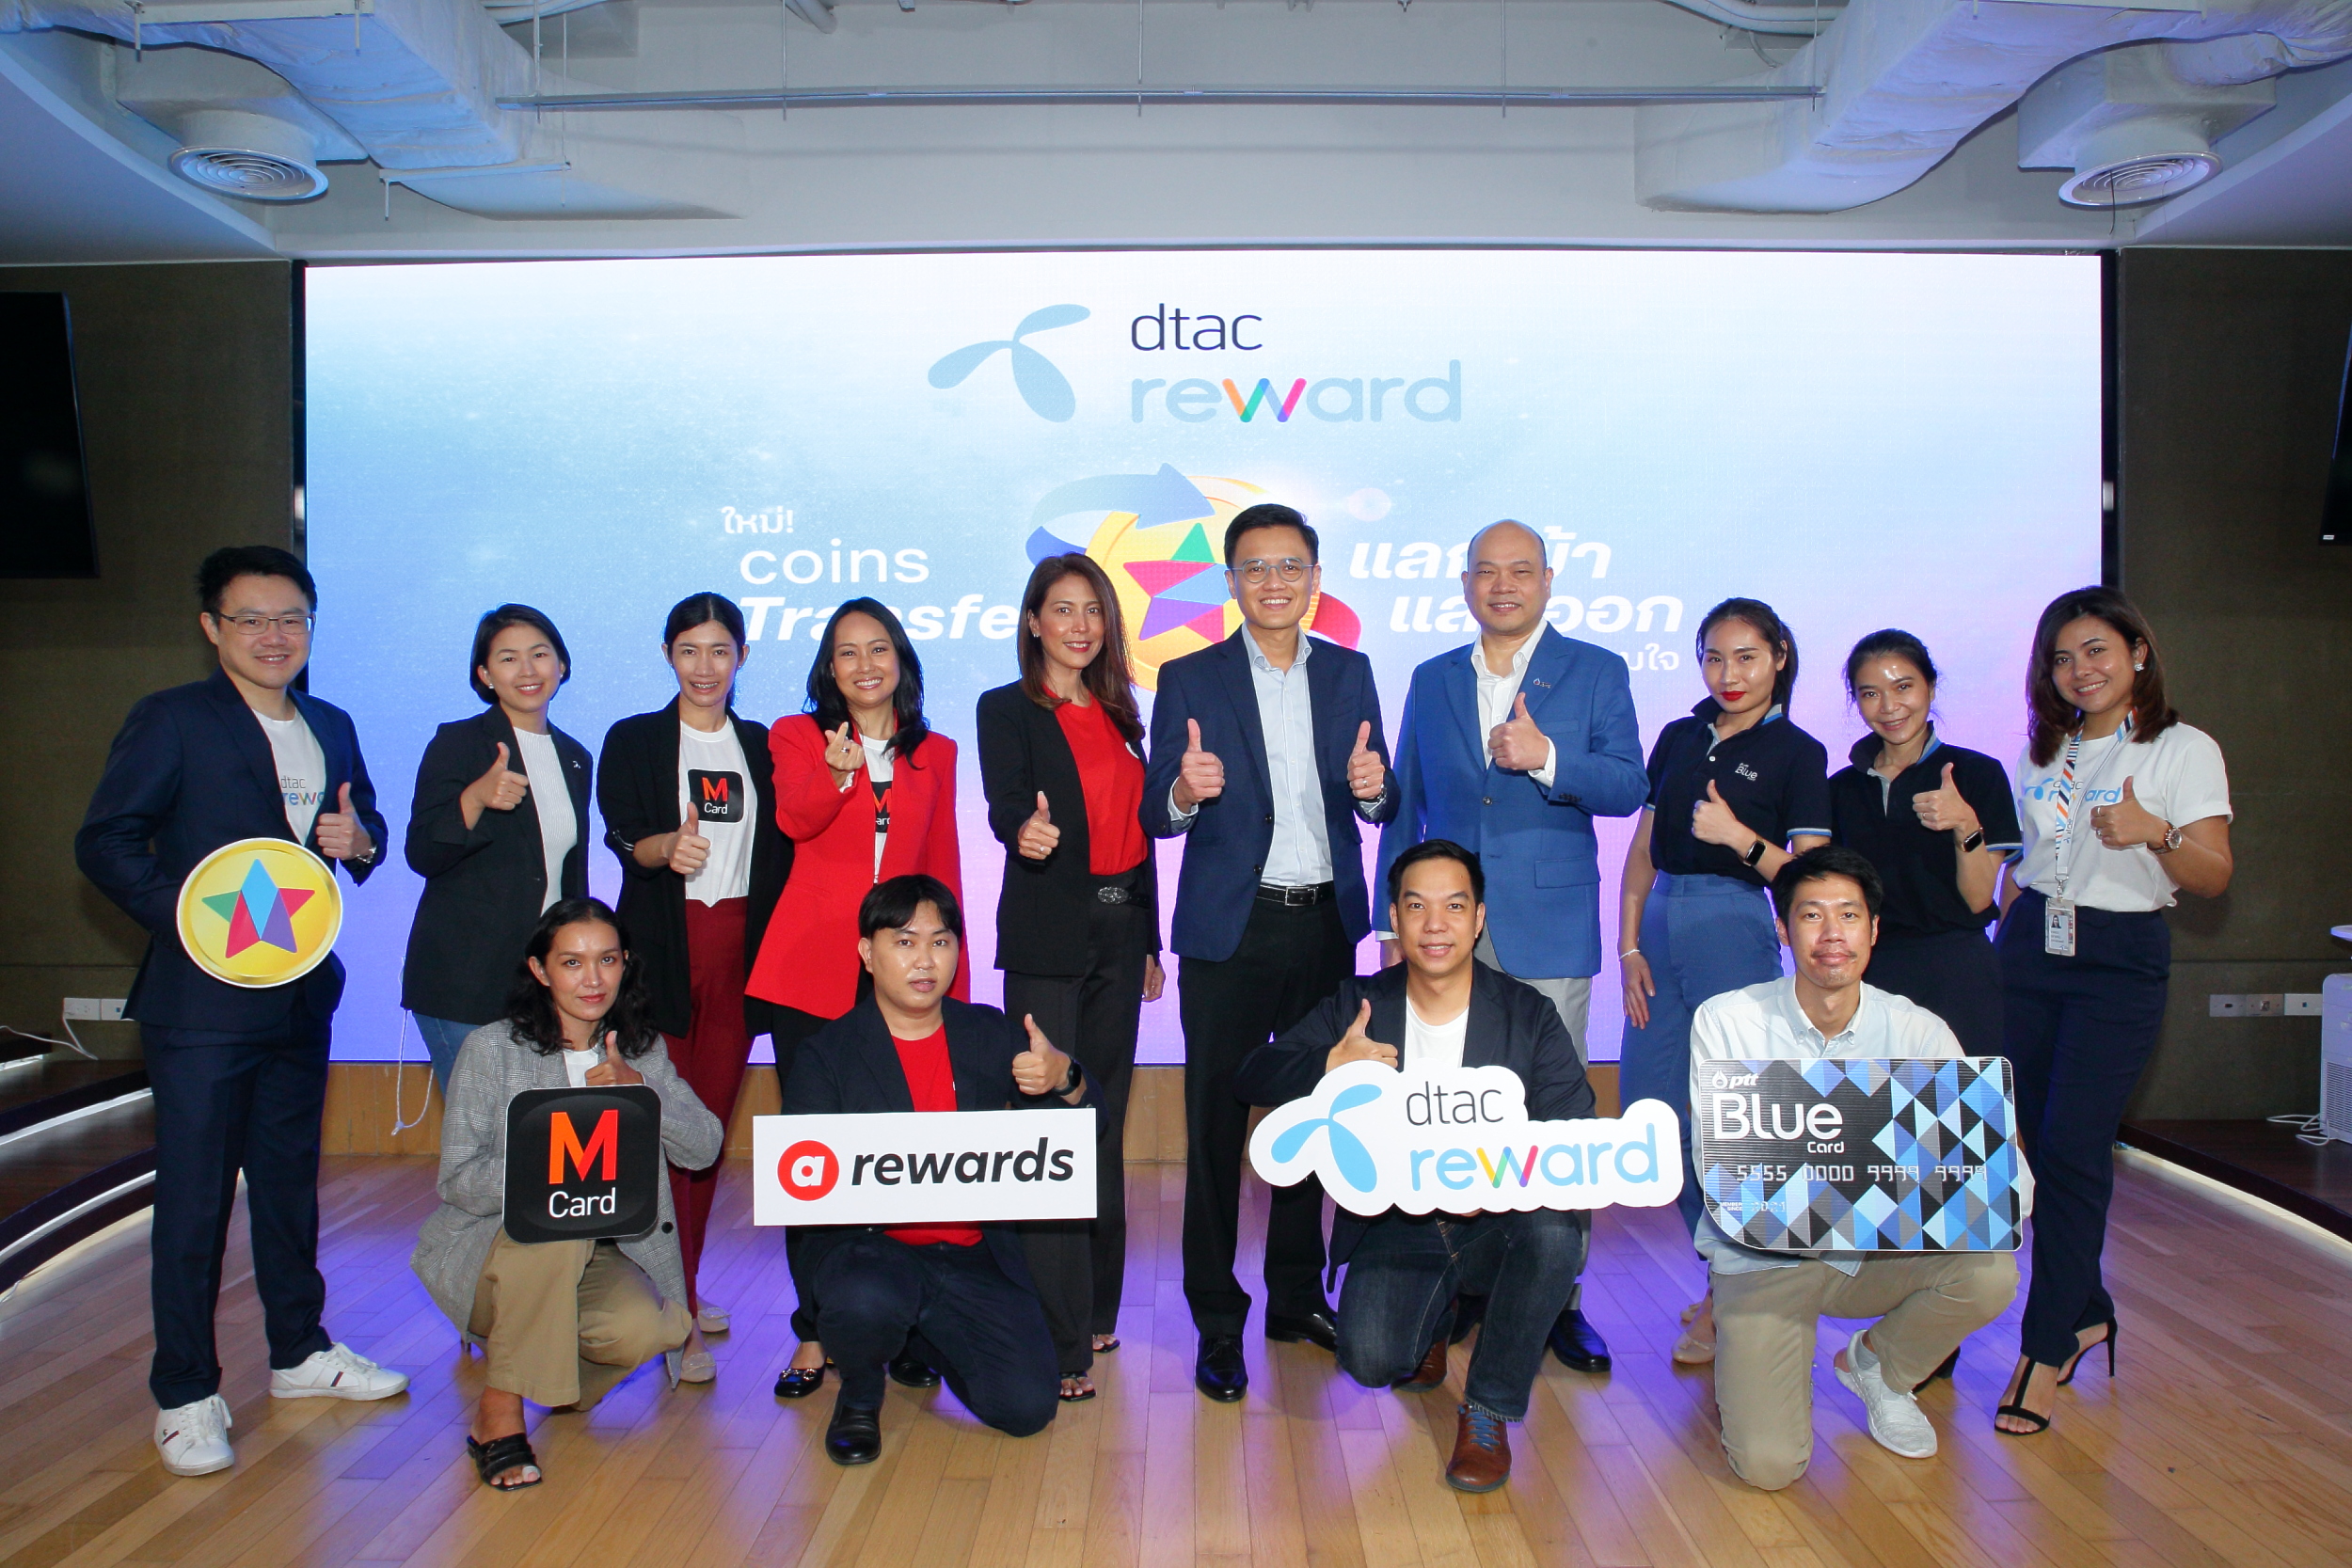 ดีแทค รีวอร์ด Coins Transfer แลกเข้า แลกออก แลกได้ตามใจ ครั้งแรกที่ให้ลูกค้าดีแทคและ ลูกค้าพันธมิตร 3 แบรนด์ชั้นนำ airasia rewards, M Card เครือเดอะมอลล์กรุ๊ป และ Blue Card 